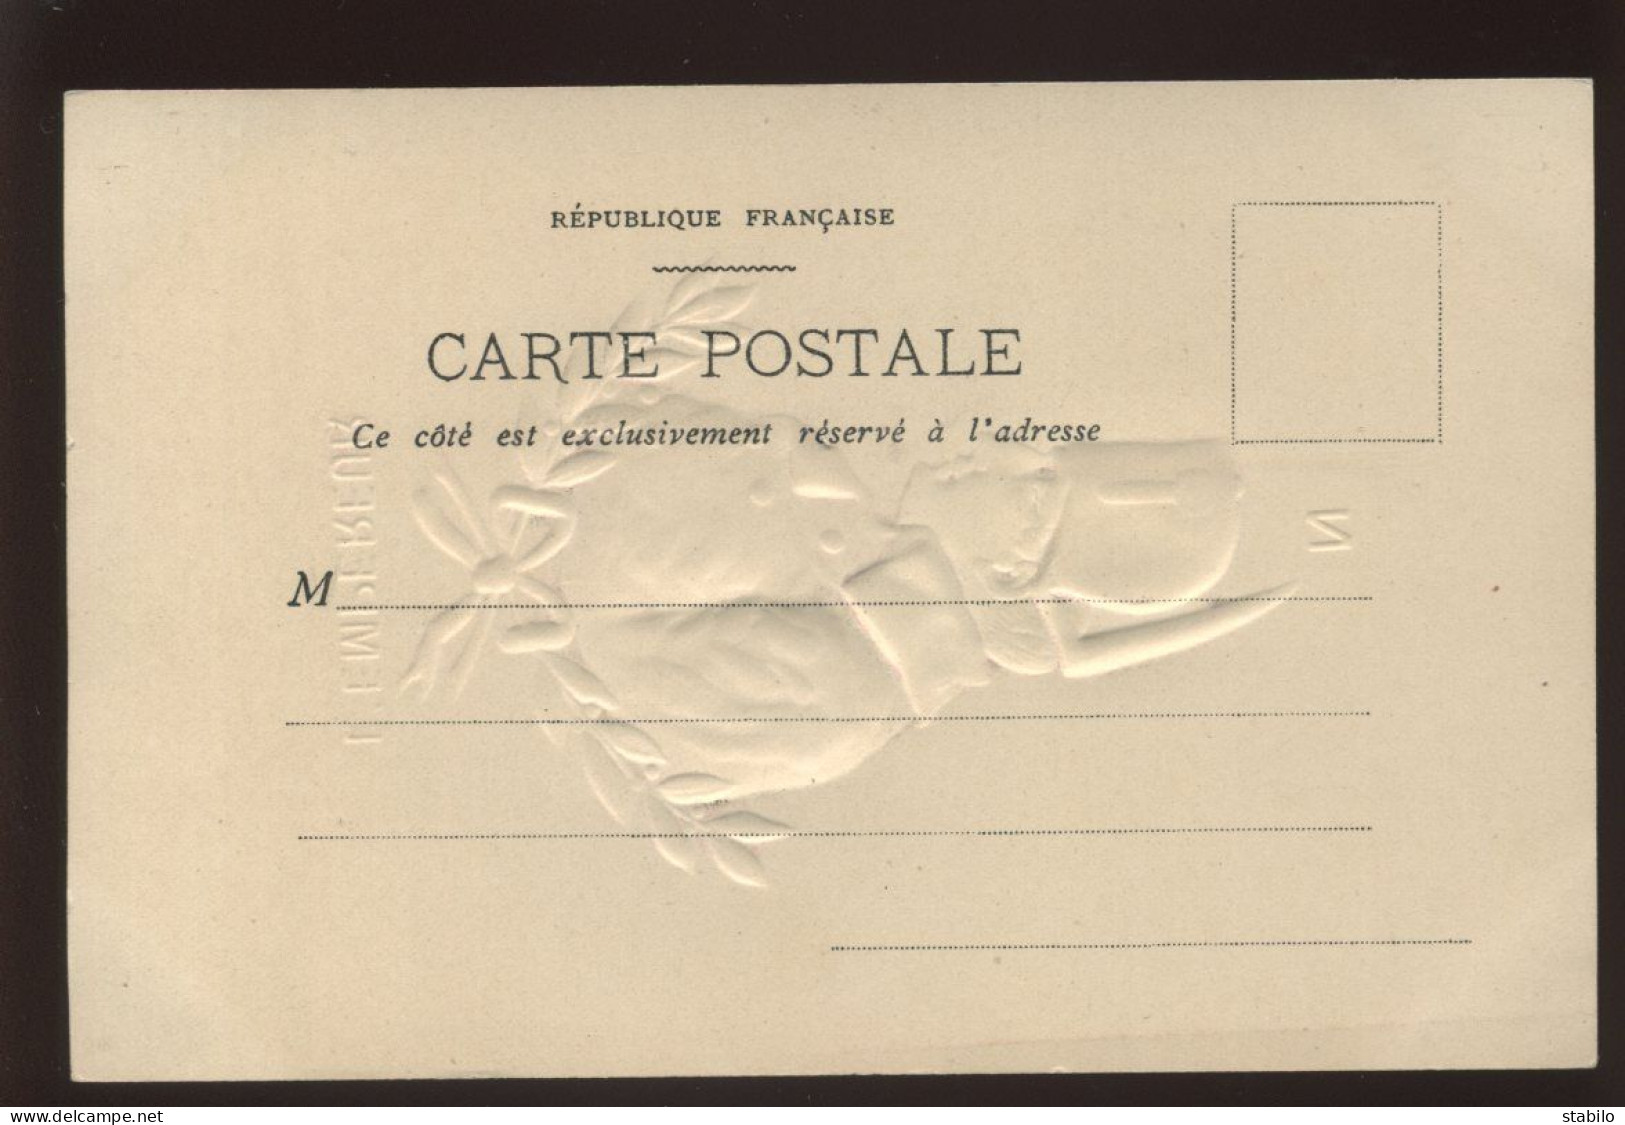 MATIERE - CARTE PORCELAINE GAUFREE - PORTRAIT DE NAPOLEON - HISTOIRE - Cartes Porcelaine